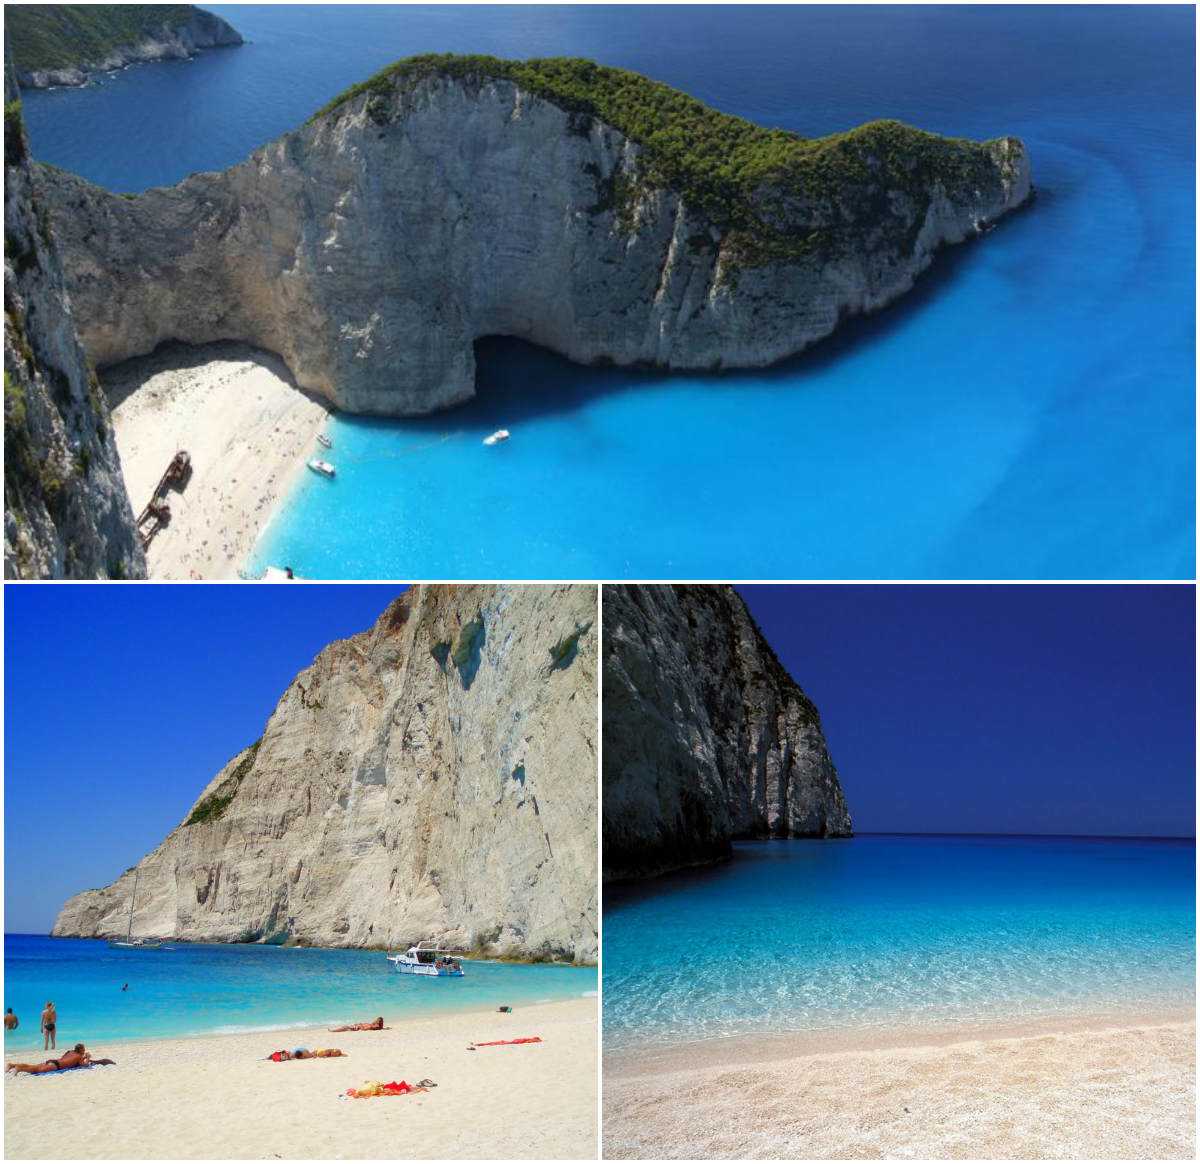 Отдых в греции с детьми: куда лучше поехать, какой остров и курорт выбрать